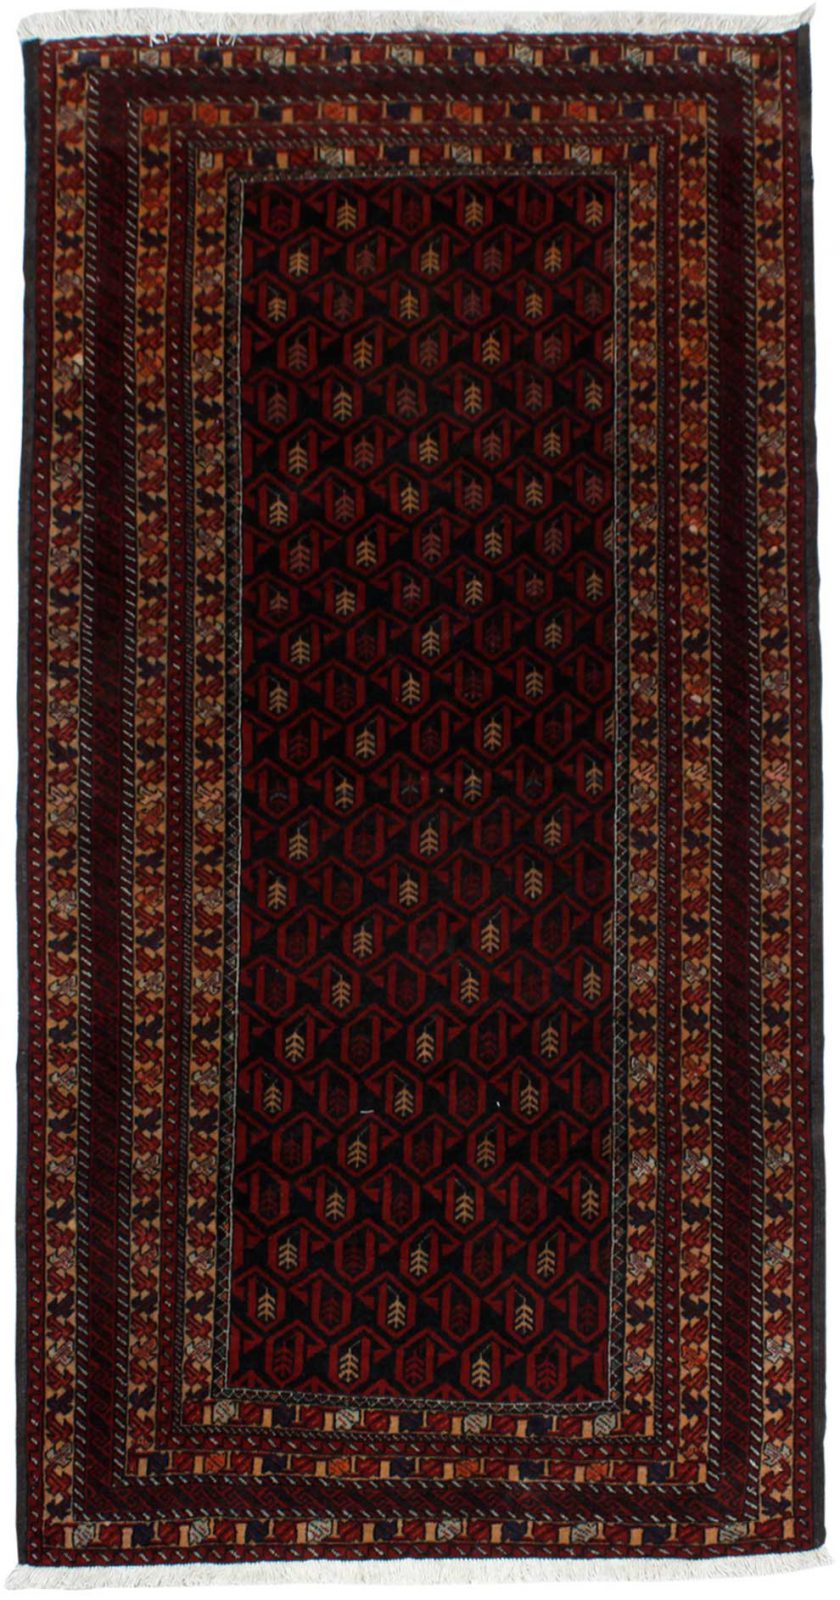 فرش دستباف بلوچ طرح بته سایز قاليچه۲٫۲۴×۱٫۱ رنگ زمینه سرمه اي رنگ حاشیه لاكي کد ۴۳۵۳۱